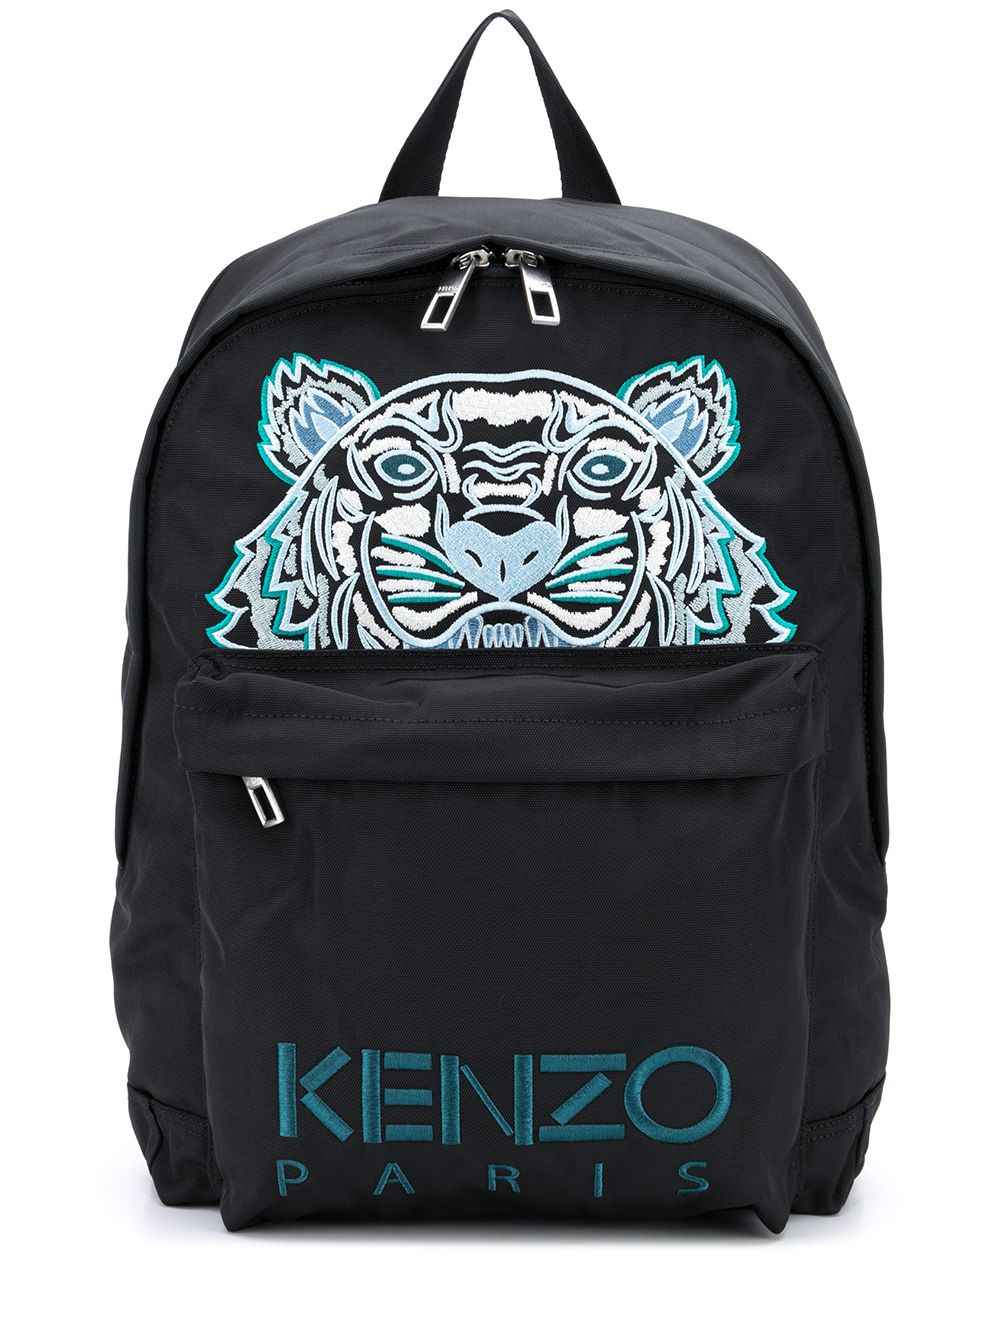 фото Kenzo рюкзак с вышитым логотипом